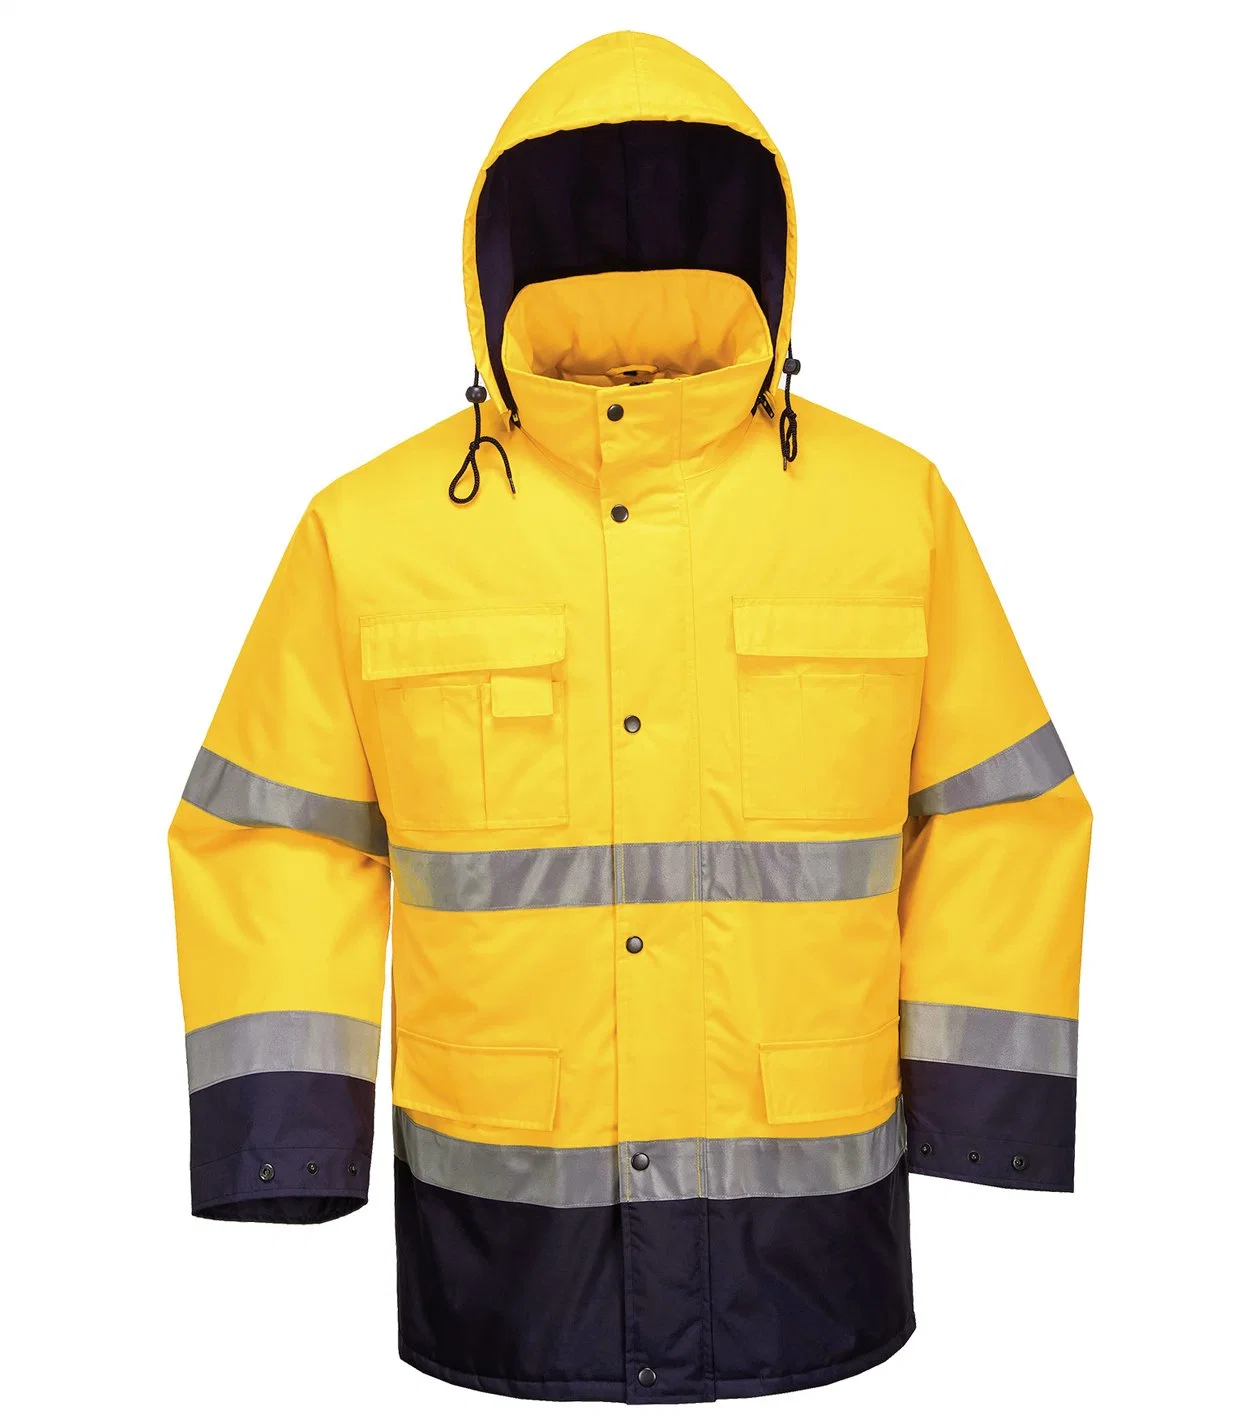 Uniform Safety N Work Uniform Unisex Factory Work Clothes